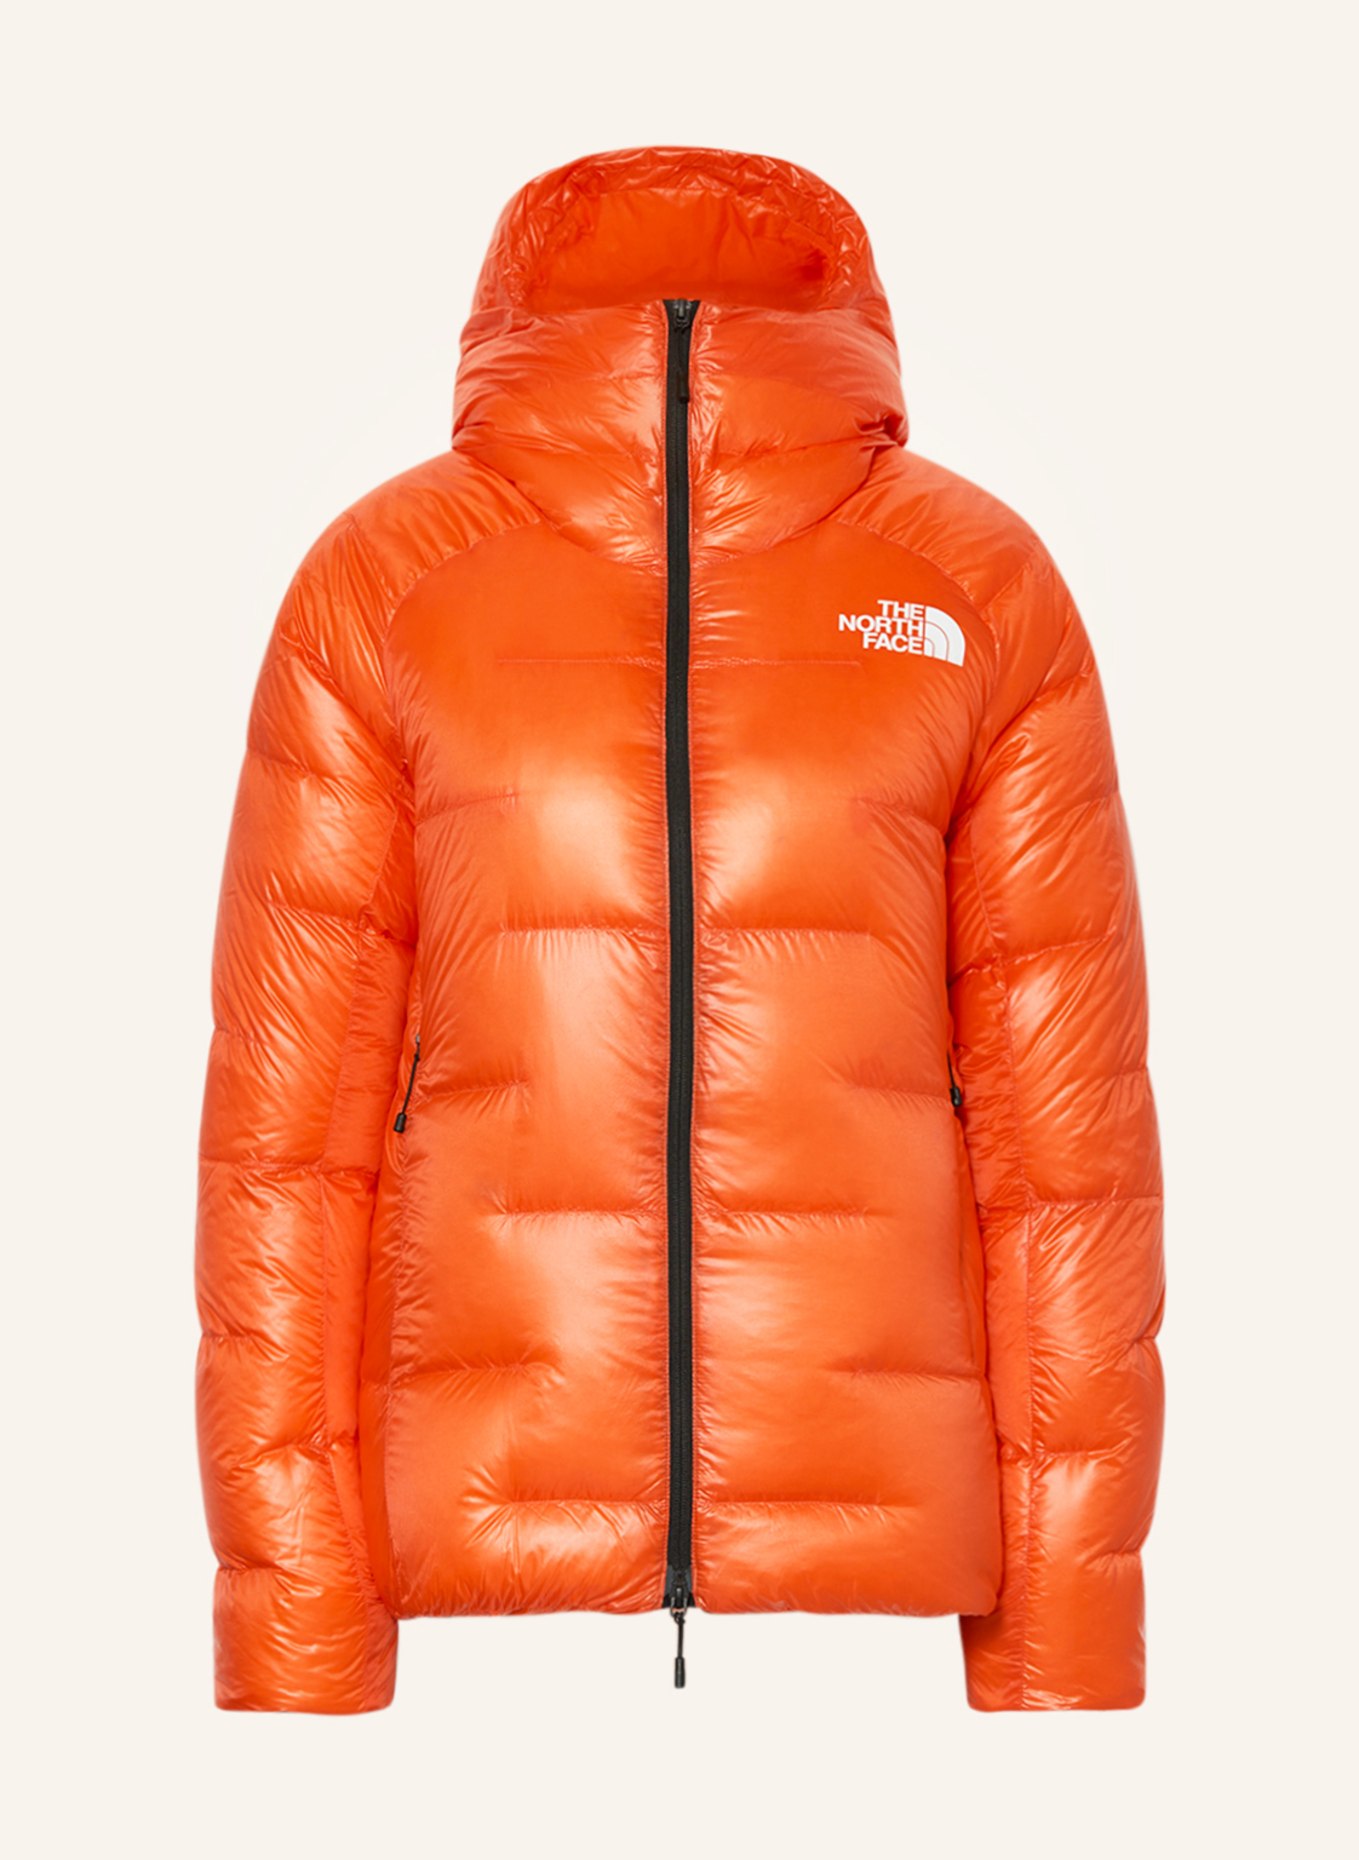 FACE PUMORI NORTH jacket orange down THE in Lightweight SUMMIT